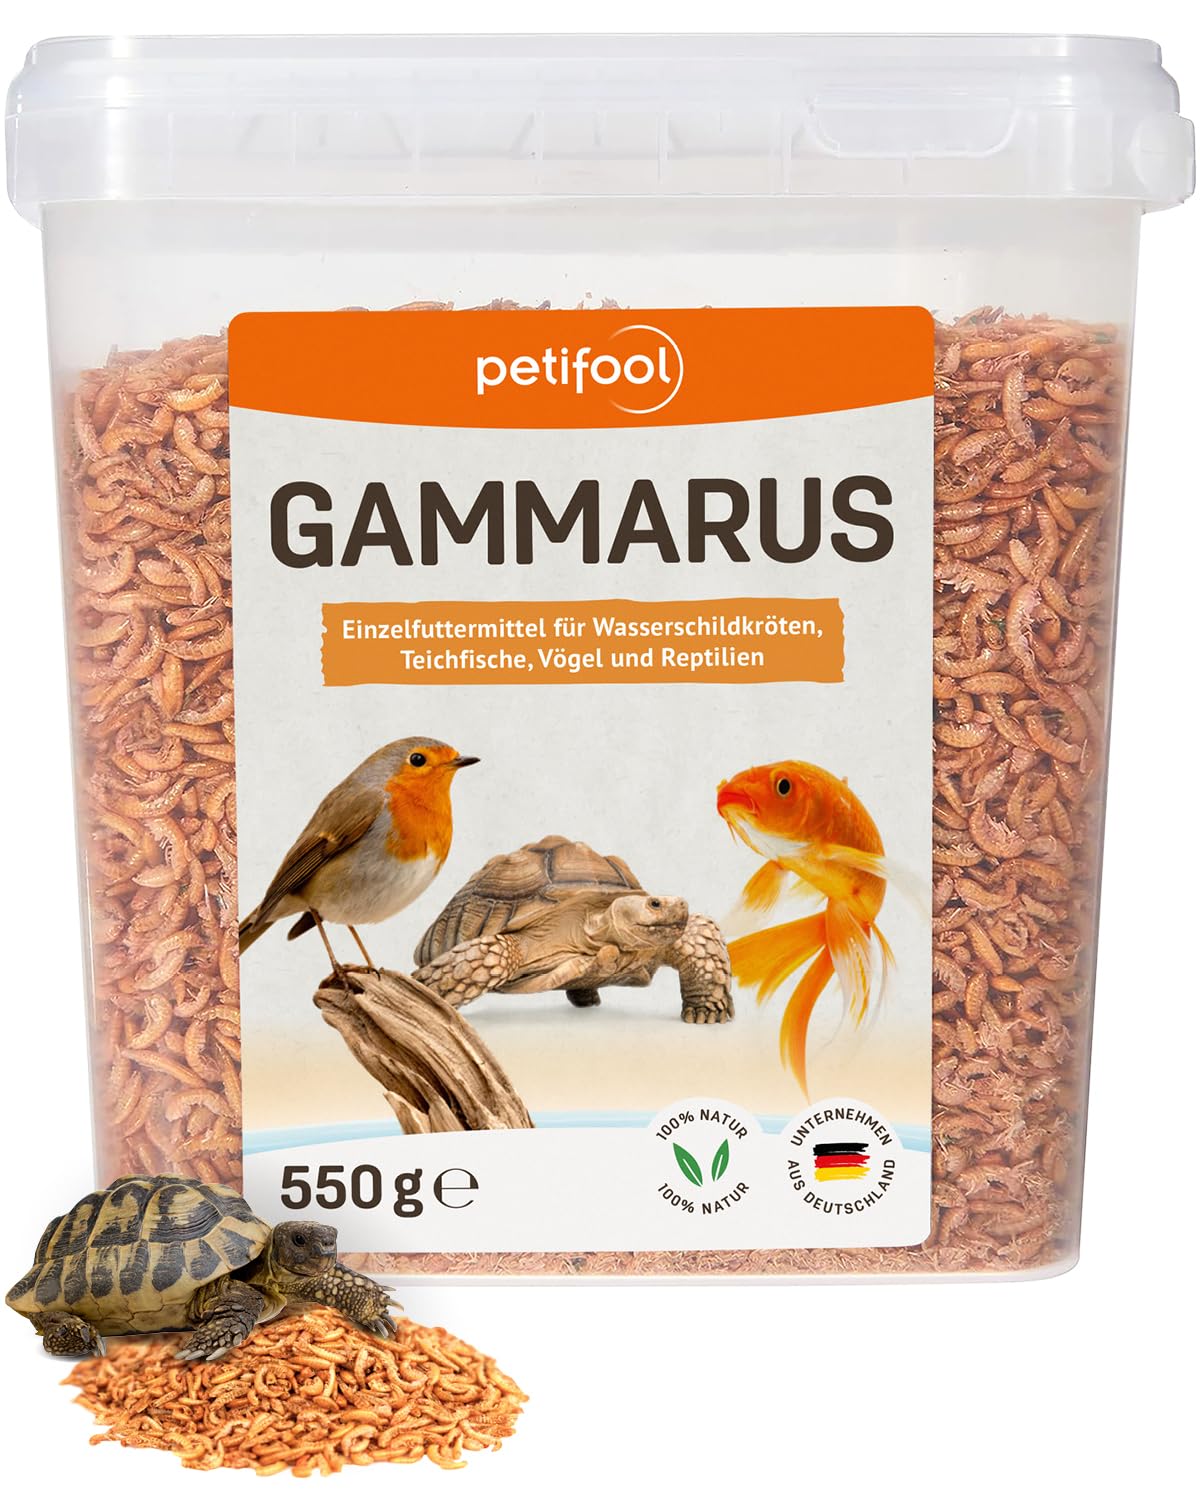 petifool Gammarus 550g – getrocknete Bachflohkrebse - gesunder Snack für Schildkröten, Fische, Vögel, Reptilien und Nager – natürliches Futtermittel